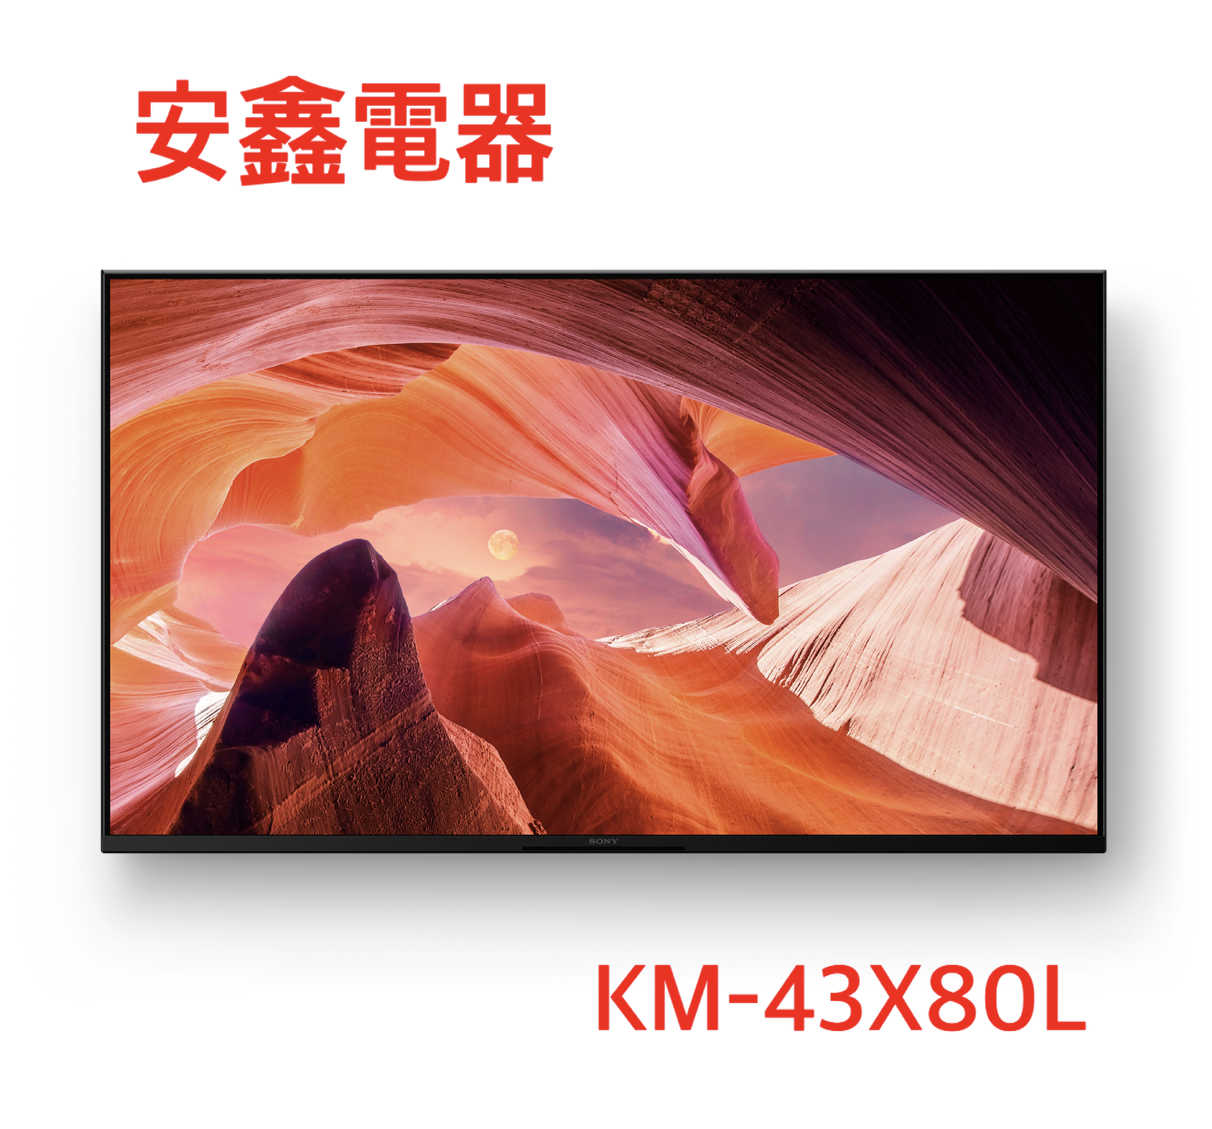 領券再折 SONY 索尼【KM-43X80L】43吋 4K聯網液晶顯示器 含基本安裝